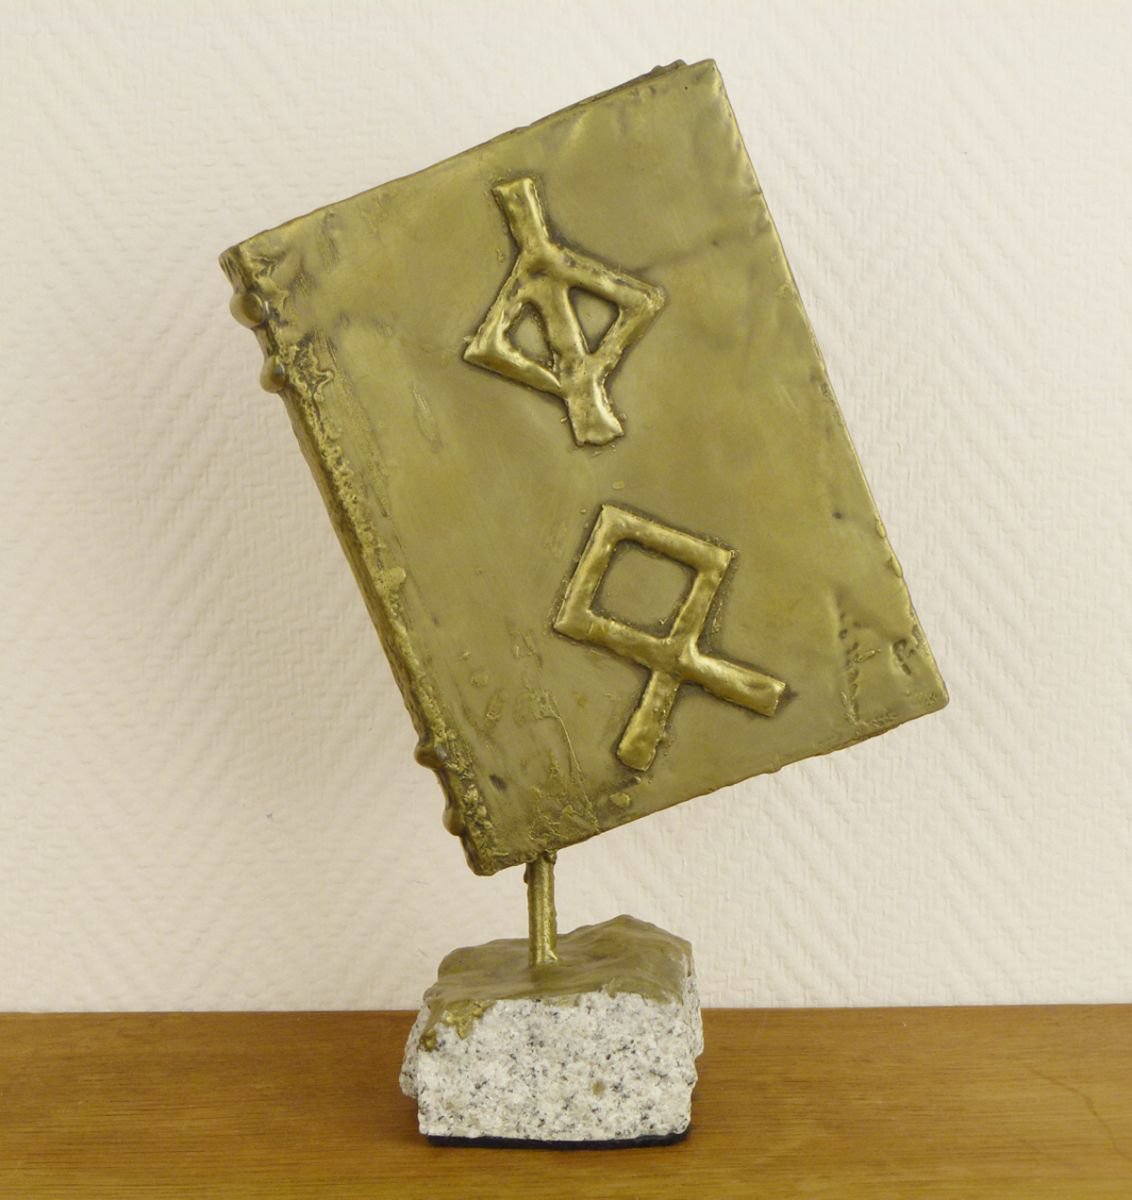 Eternal Rewards, Viking Book with Rune Symbols by Leslie Kurt Ellis